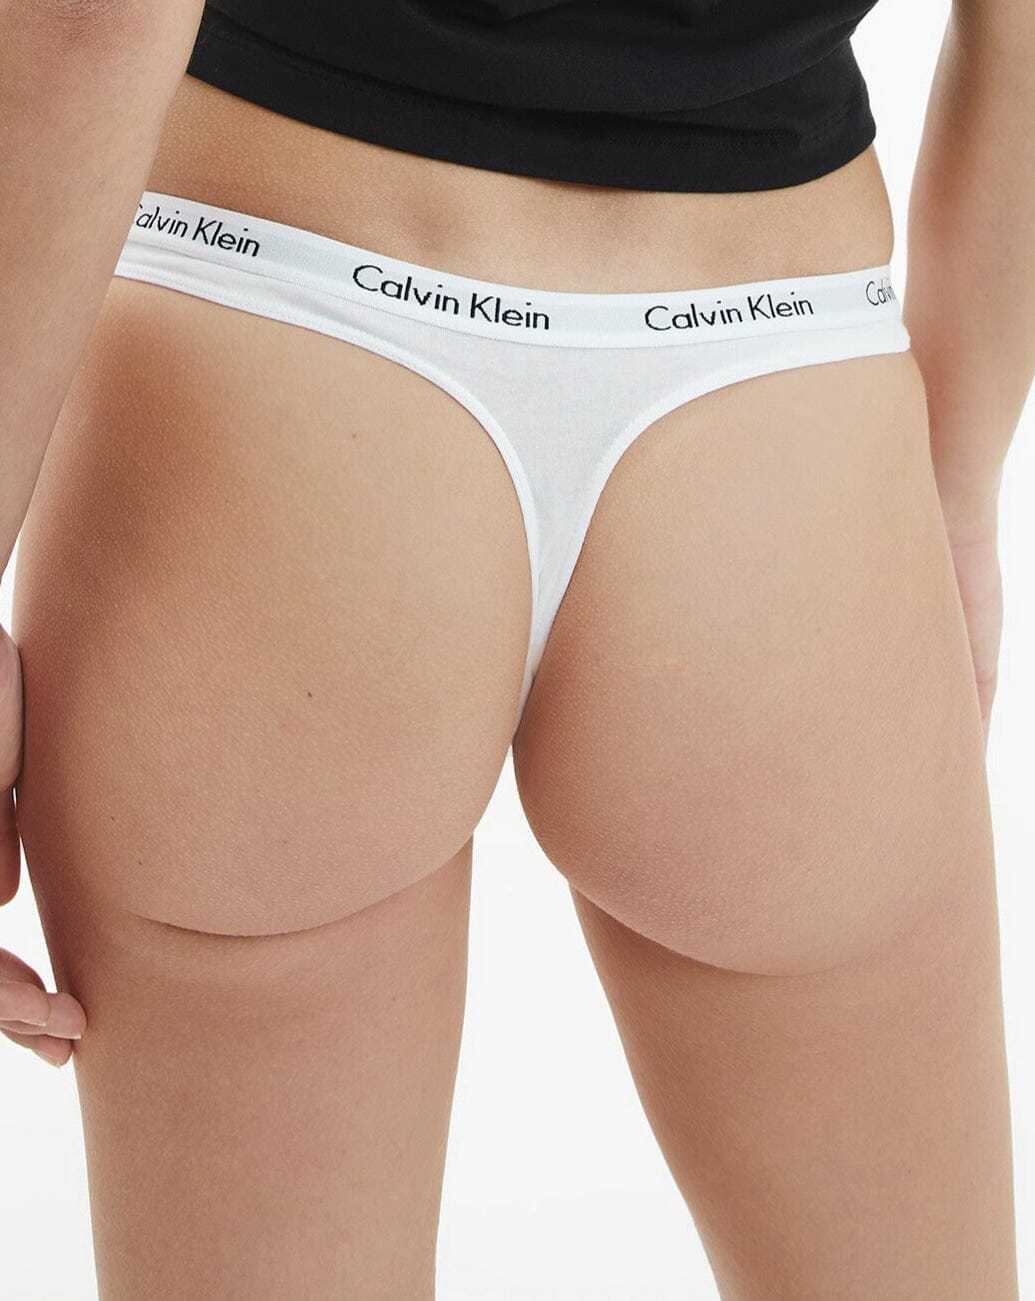 Calvin Klein Underwear Womens Carousel 3 Pack Thong, Palestine